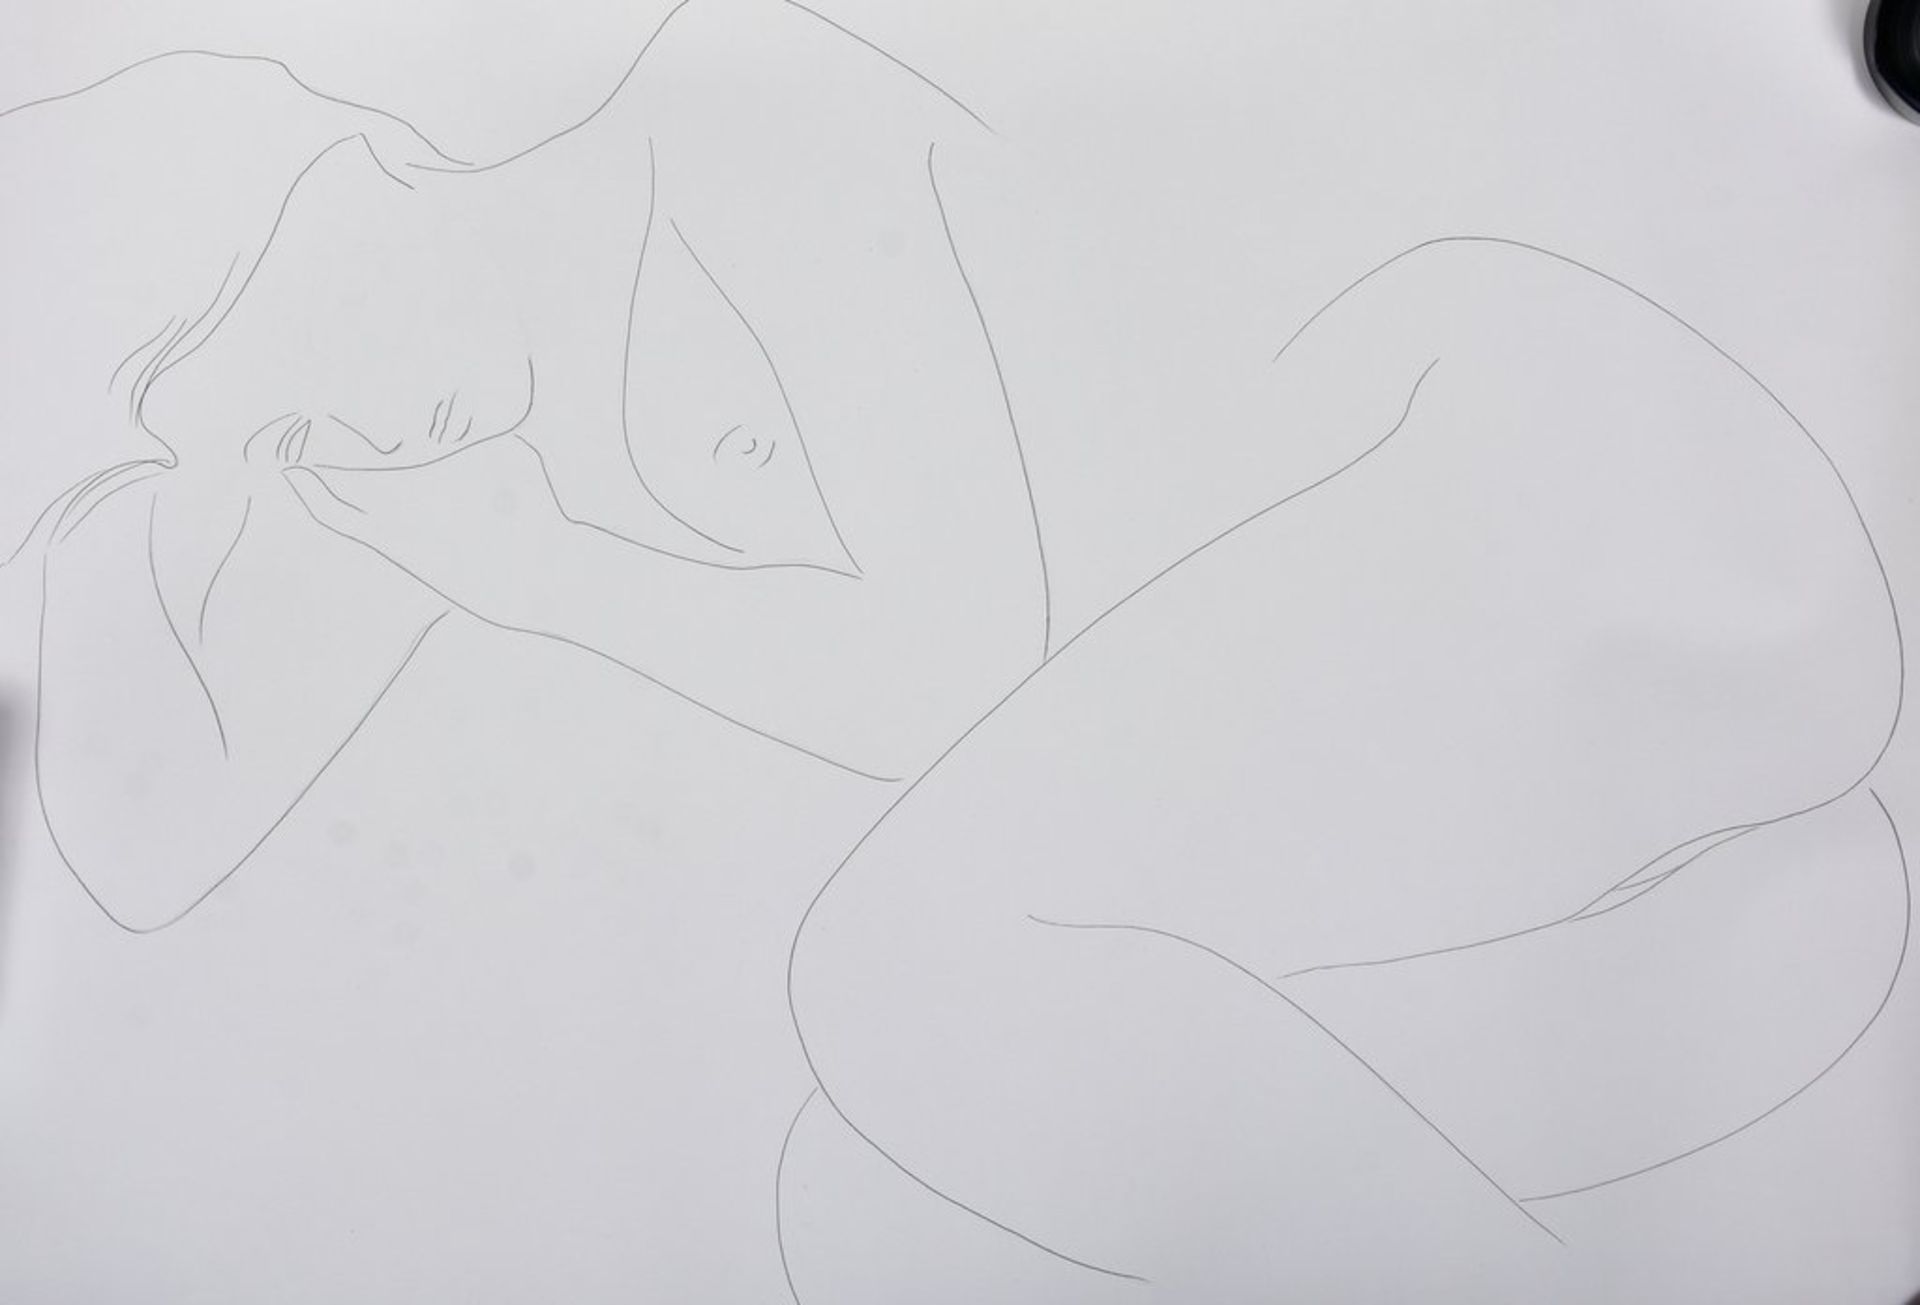 Sattarov, Mansur, dito, Zeichnung "Liegender weiblicher Akt", sign.u.dat.1991, BM 95x65cm